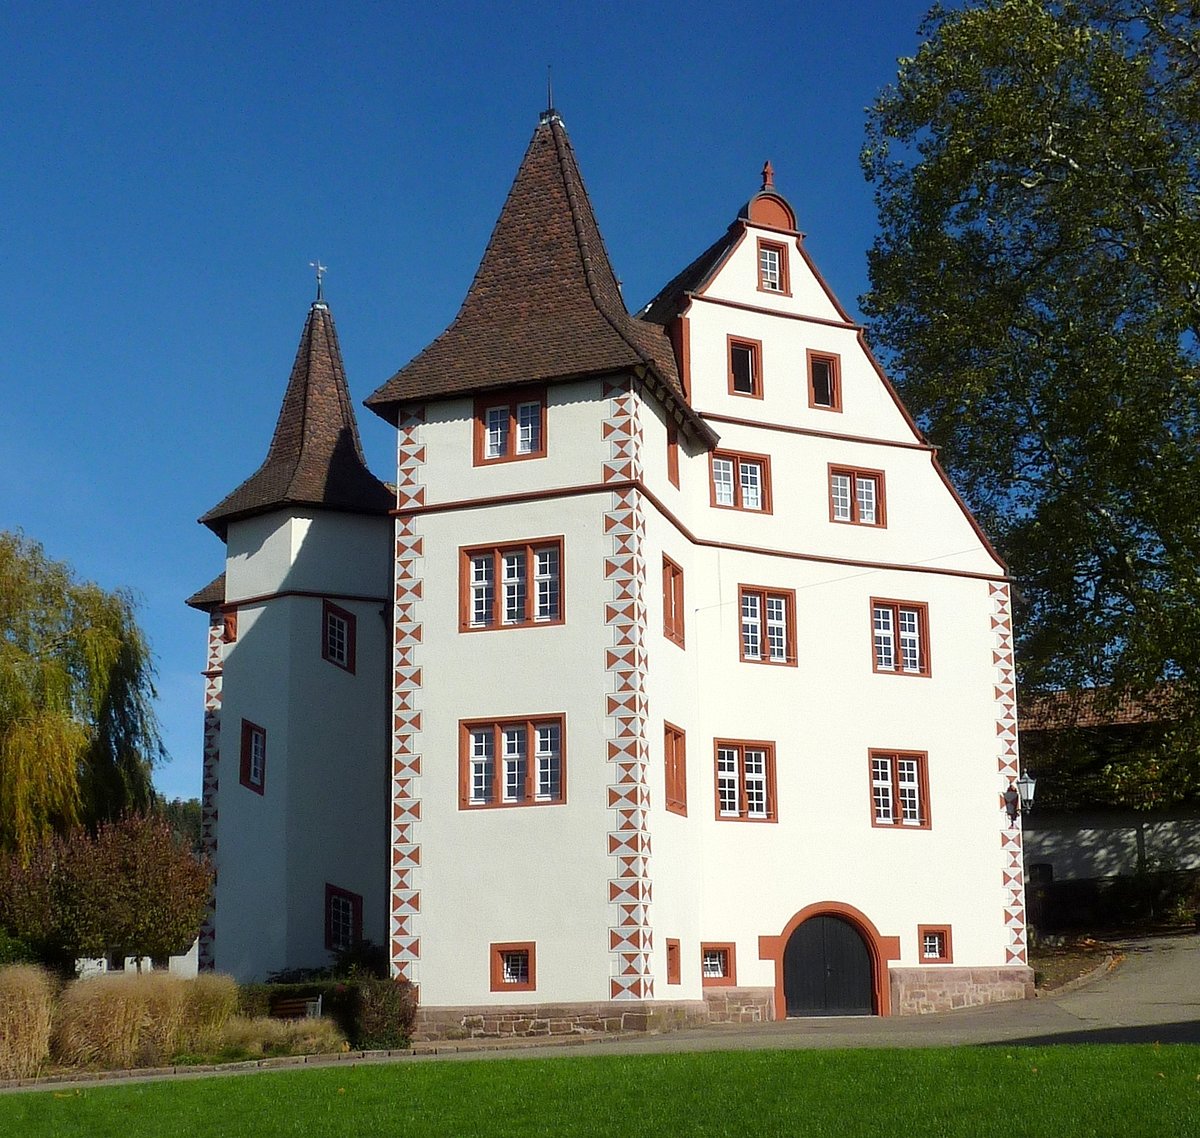 Schmieheim, OT von Kippenheim in der Ortenau, das 1606-09 im Renaissancestil erbaute Schlo, seit 1925 im Besitz der Gemeinde, steht unter Denkmalschutz, Okt.2012